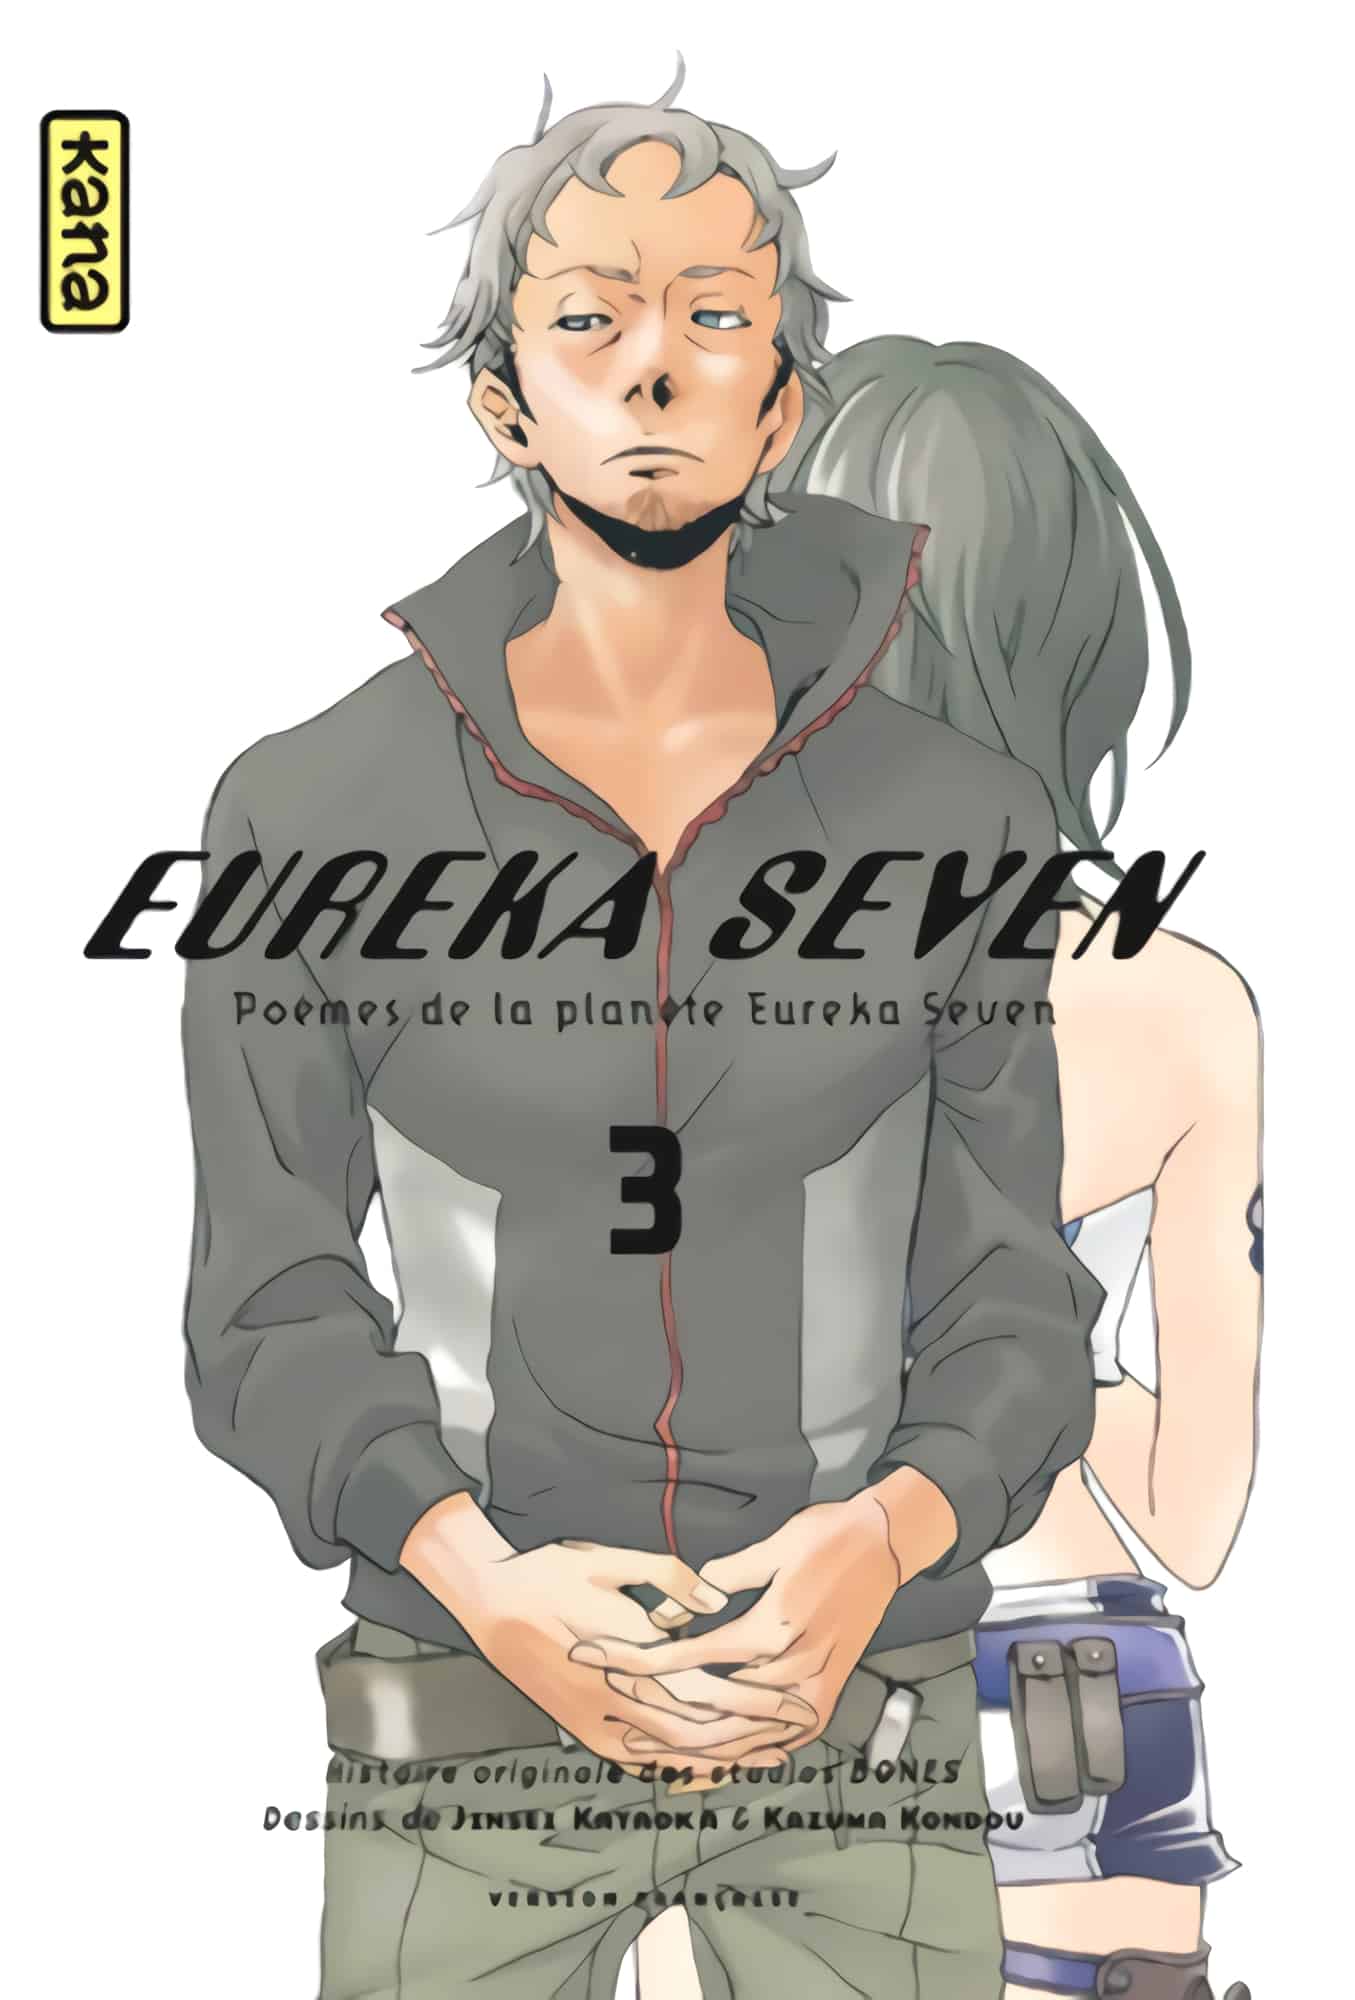 Tome 3 du manga Eureka Seven